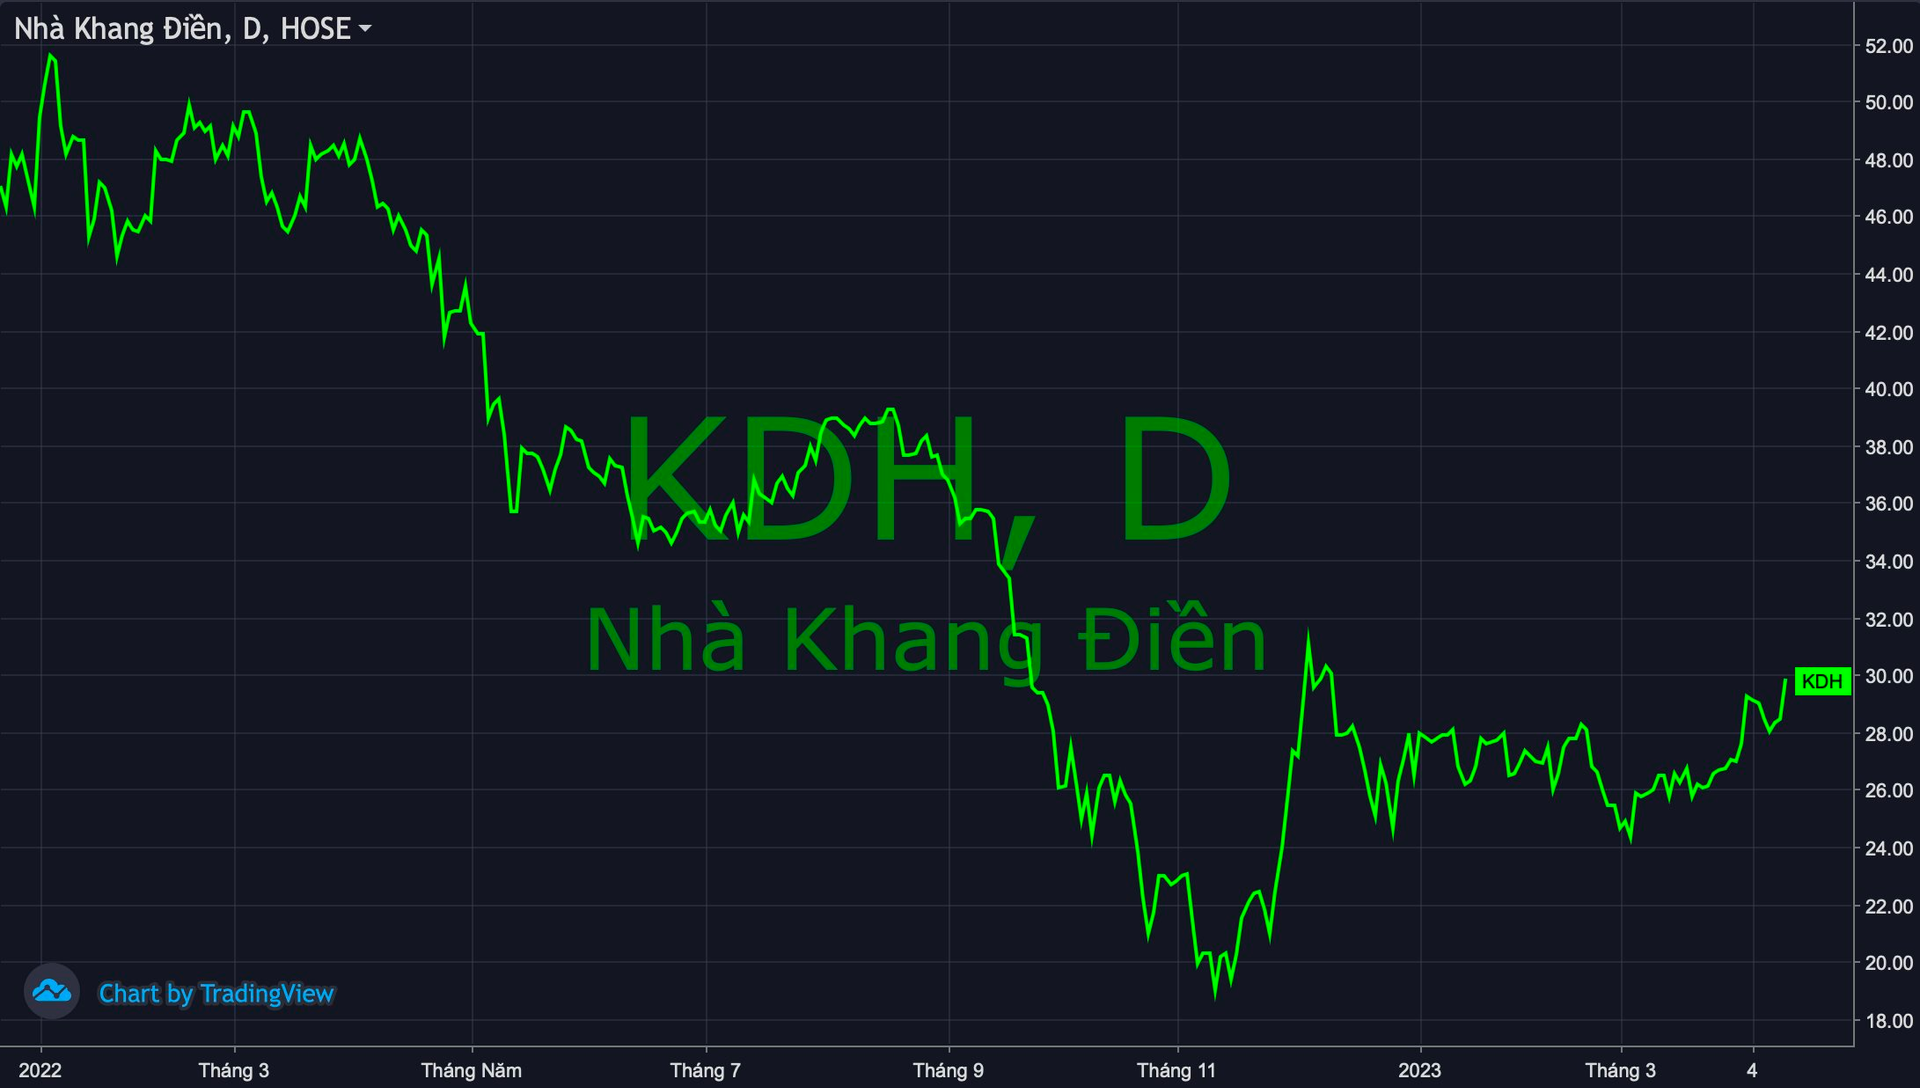 Cổ phiếu Nhà khang Điền (KDH) tăng mạnh, quỹ thành viên thuộc VinaCapital tranh thủ thoái sạch vốn - Ảnh 1.